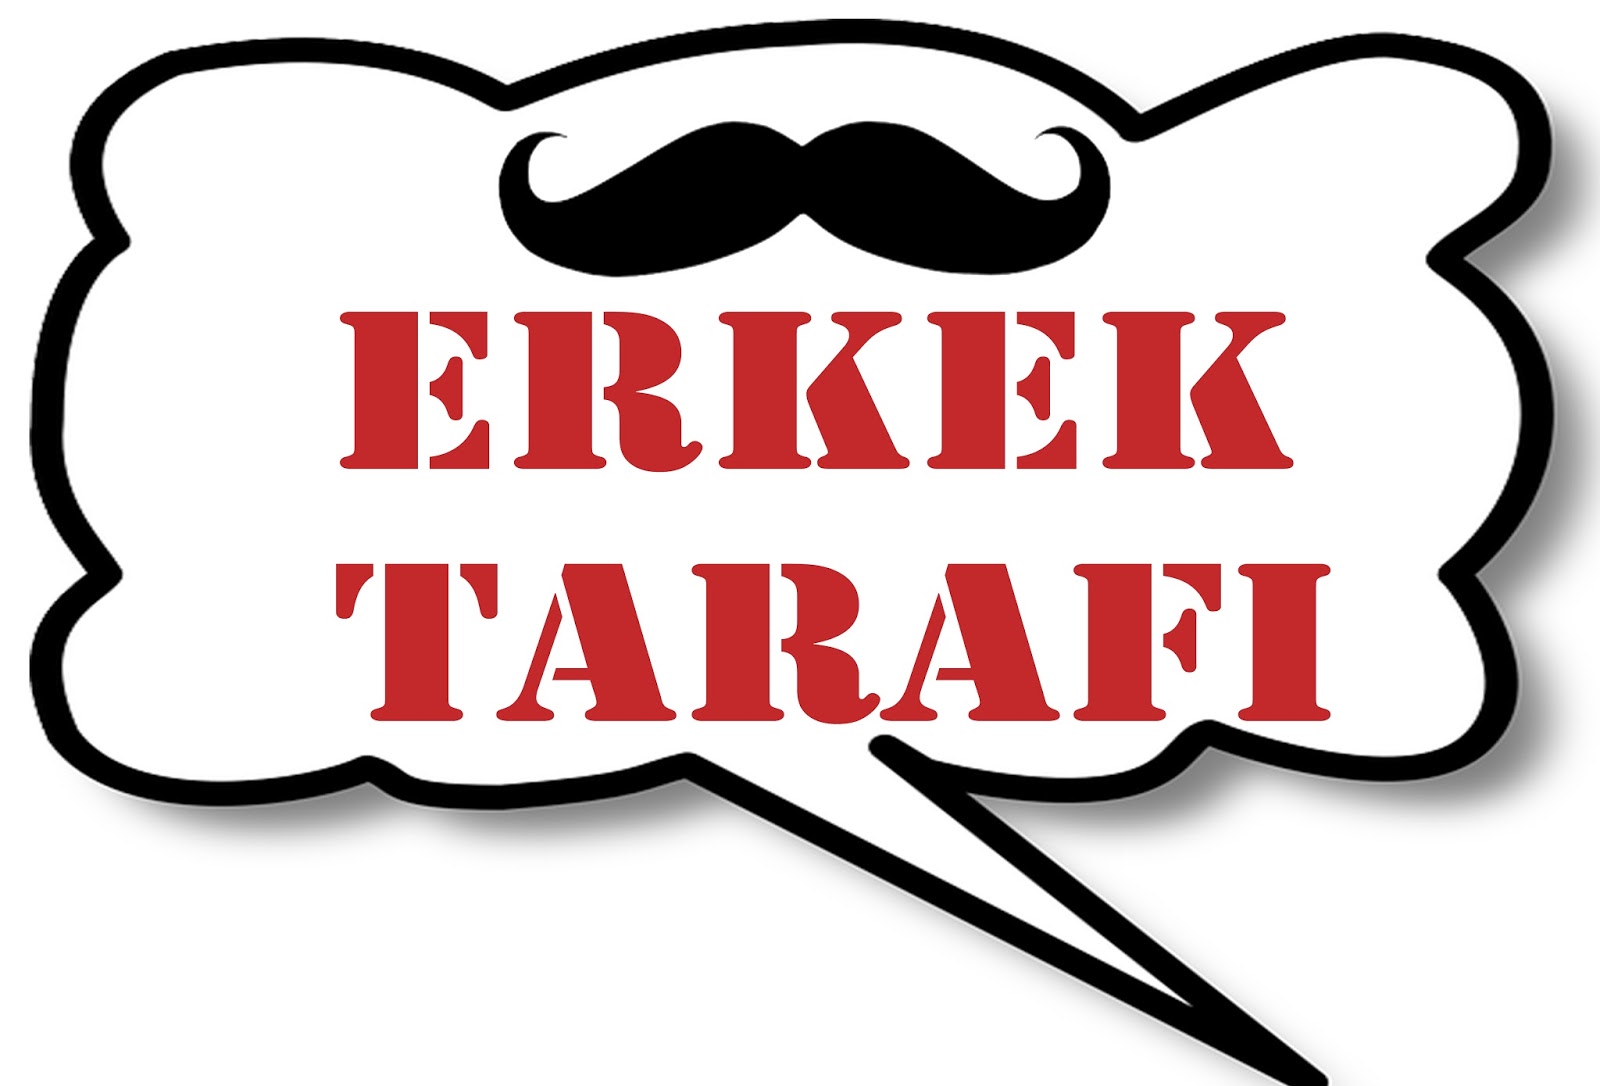 ERKEK TARAFI.jpg